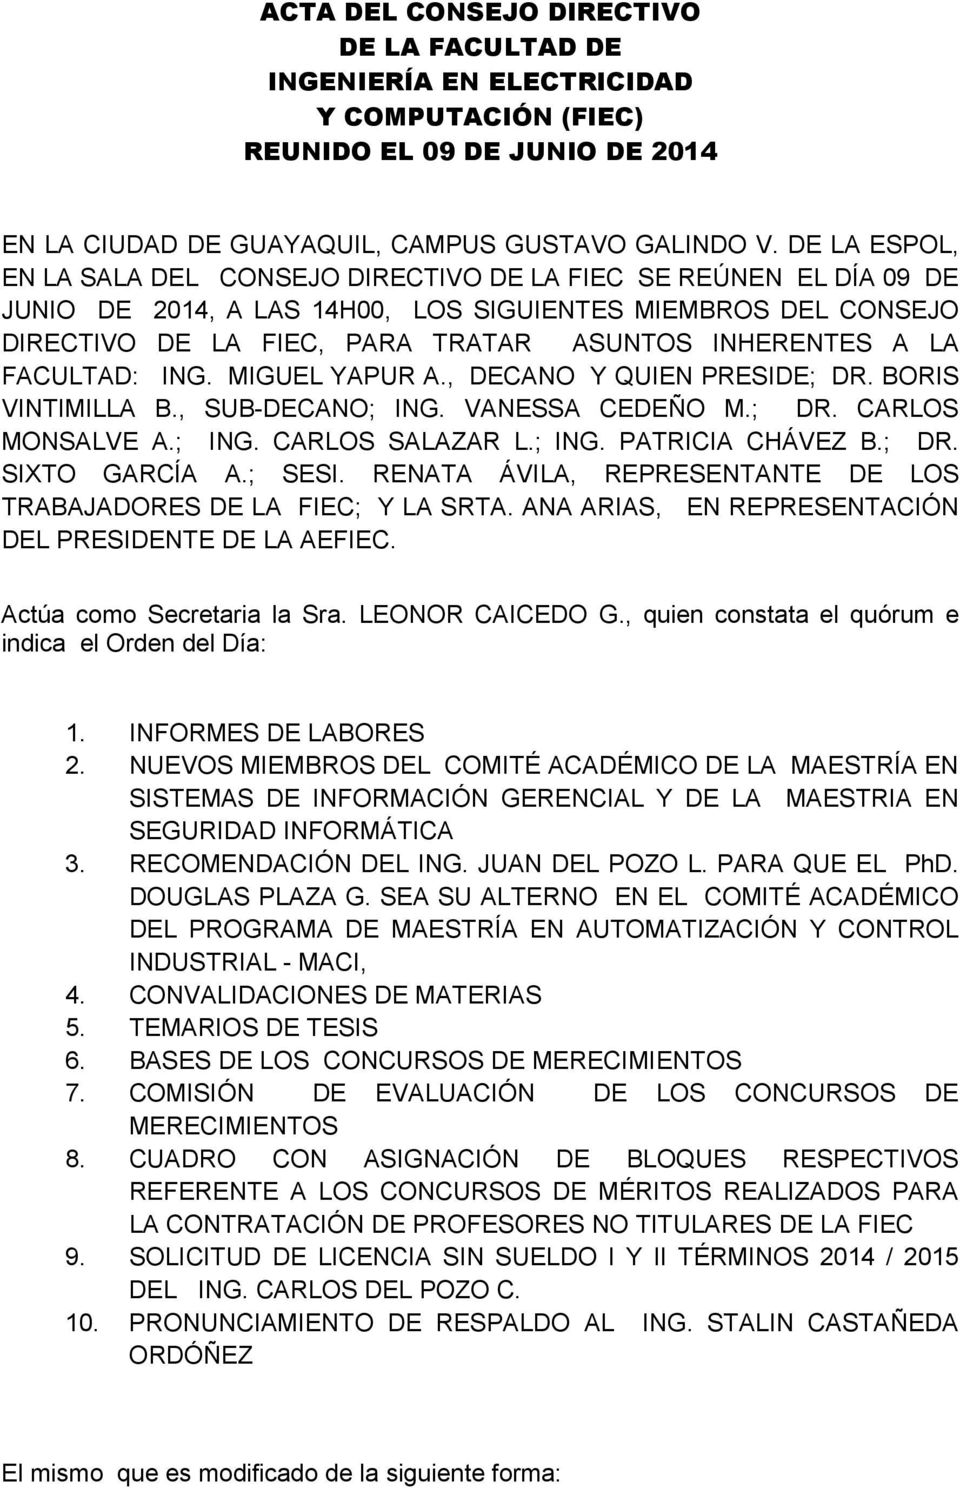 LA FACULTAD: ING. MIGUEL YAPUR A., DECANO Y QUIEN PRESIDE; DR. BORIS VINTIMILLA B., SUB-DECANO; ING. VANESSA CEDEÑO M.; DR. CARLOS MONSALVE A.; ING. CARLOS SALAZAR L.; ING. PATRICIA CHÁVEZ B.; DR. SIXTO GARCÍA A.